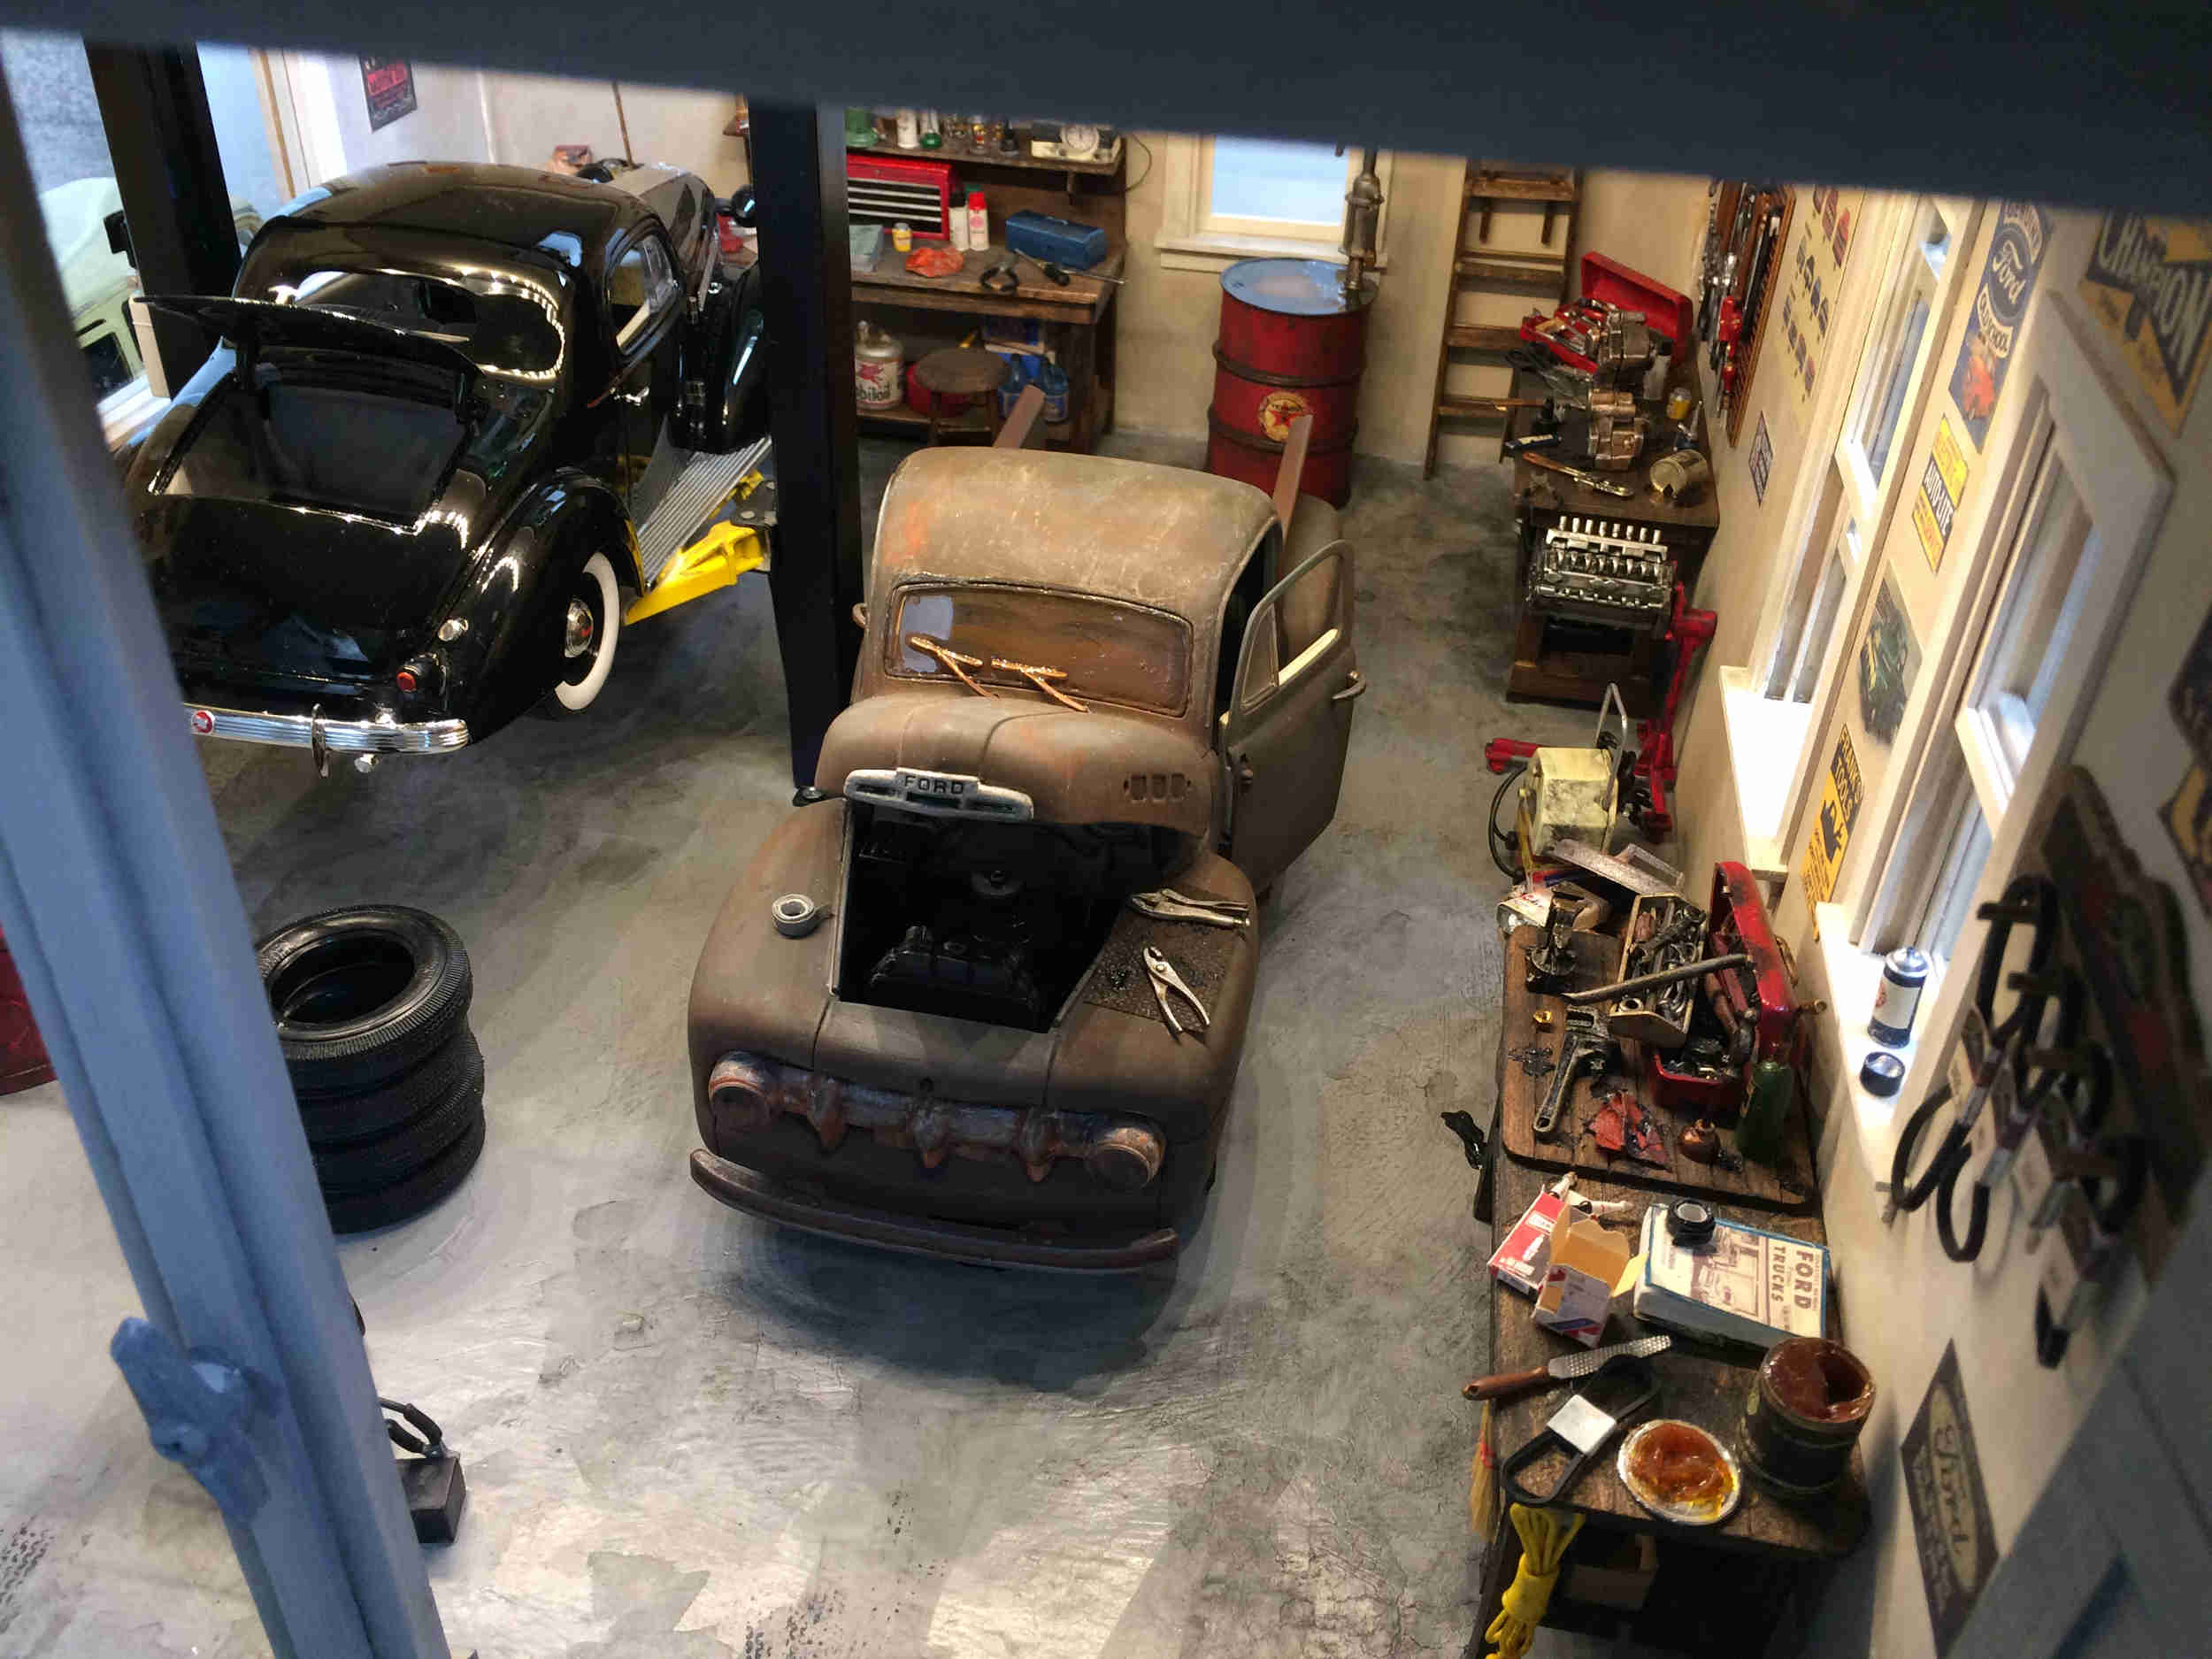 Garage interior